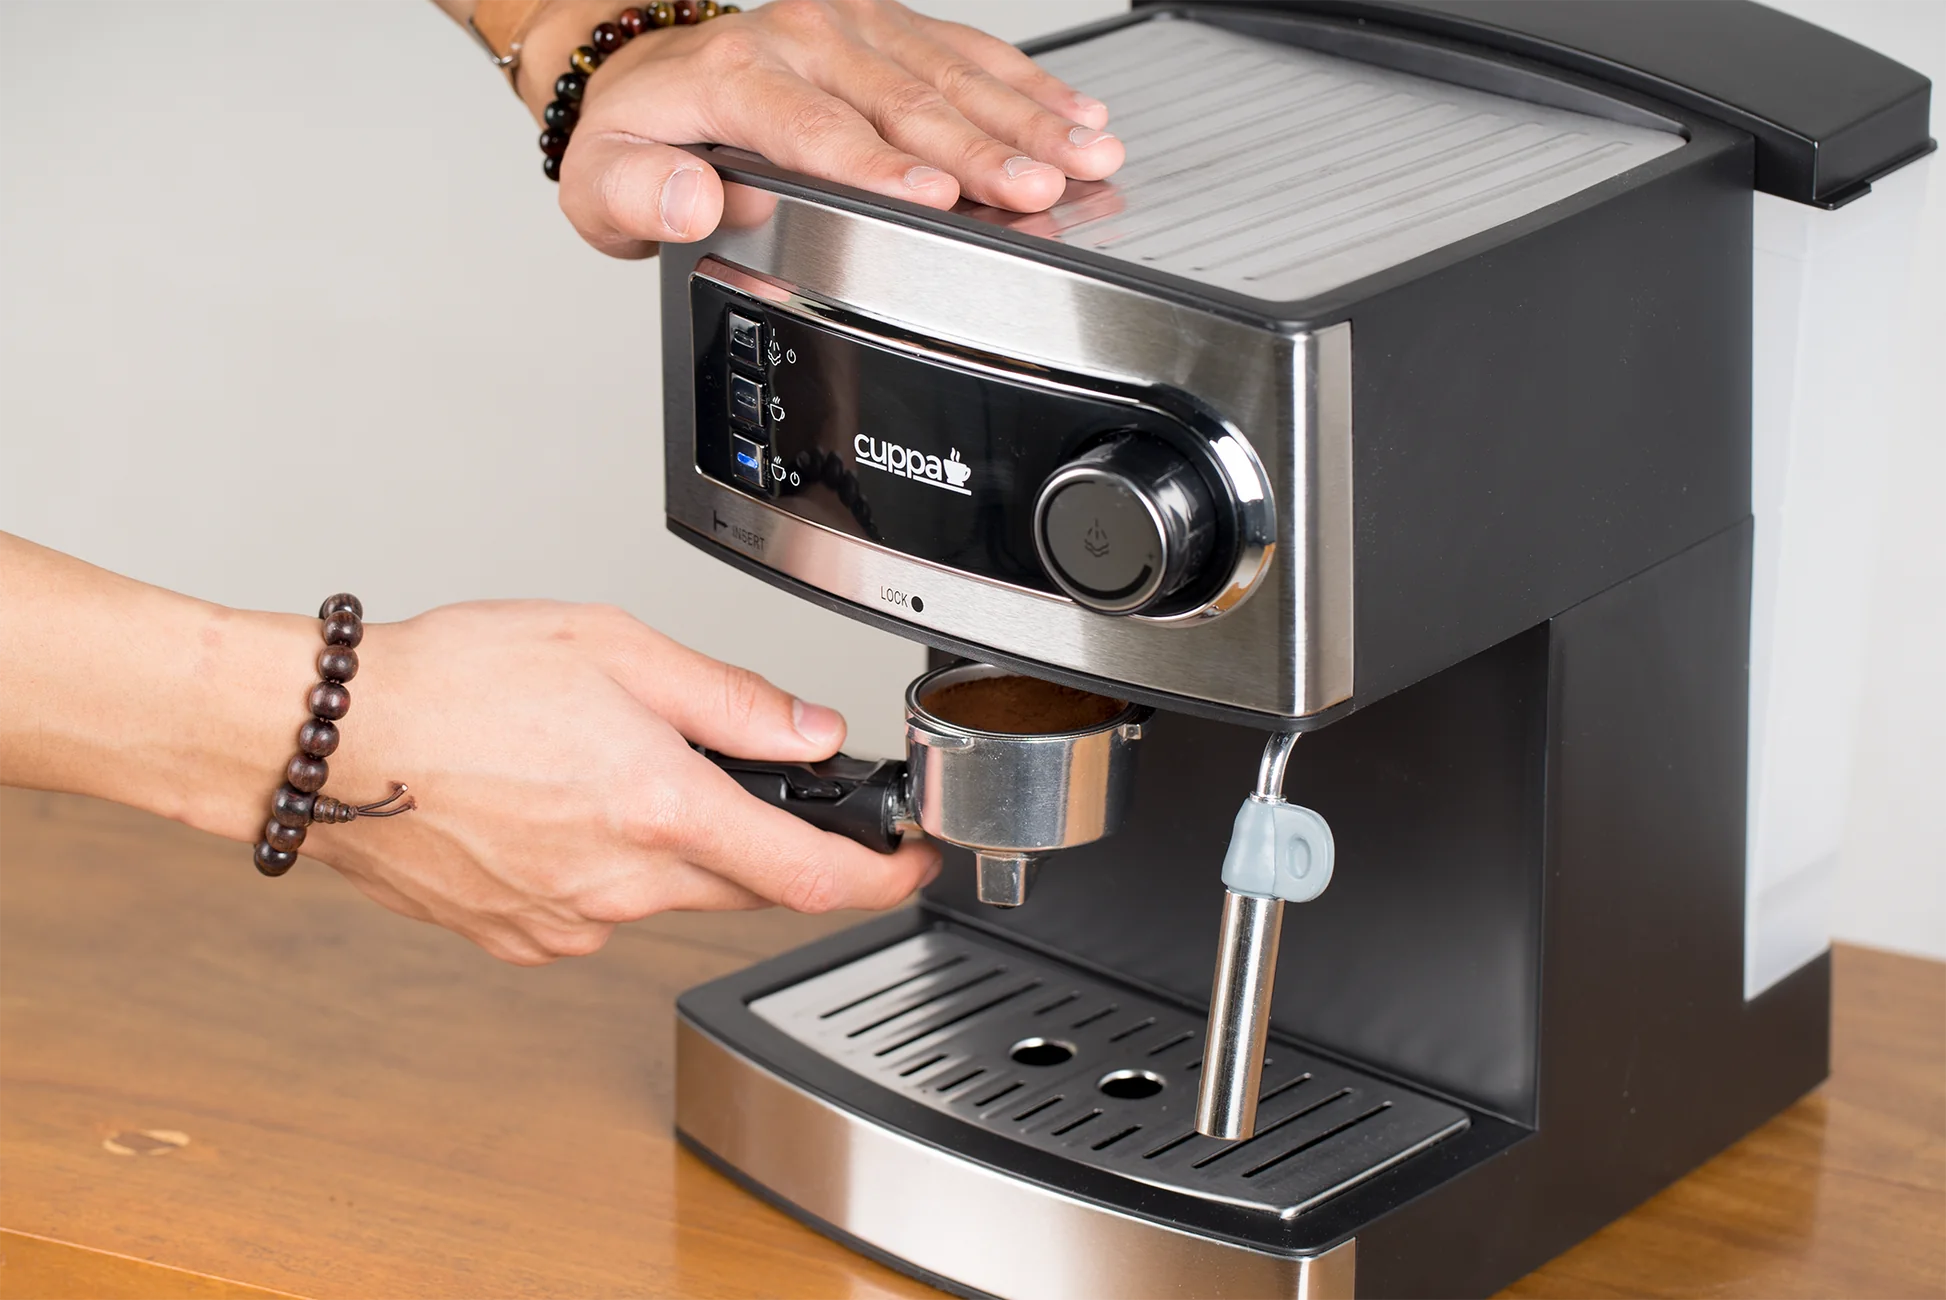 SHARDOR Espresso Machine, 20 Bar Expresso Coffee Machines with